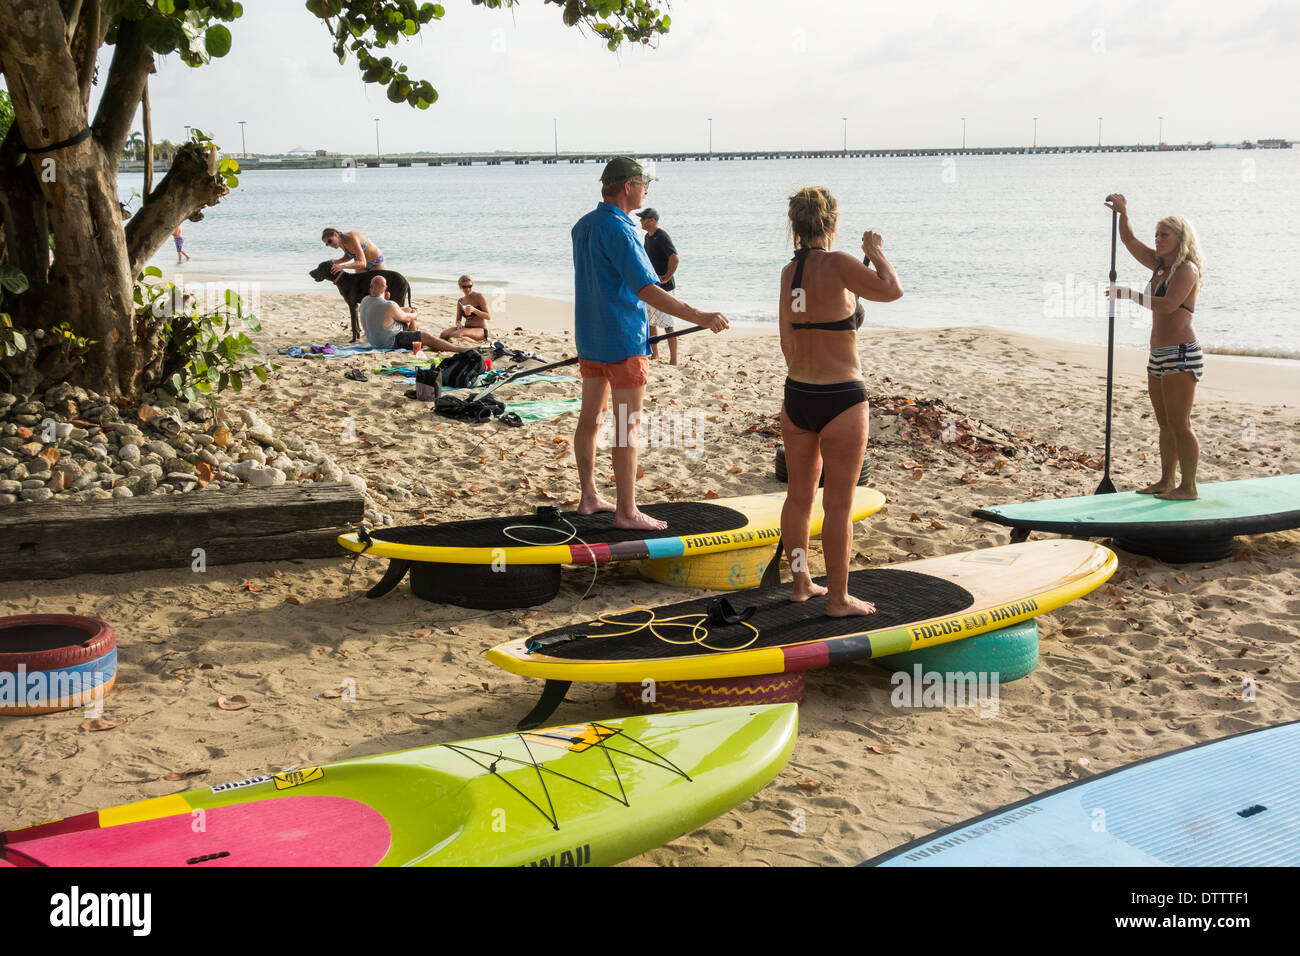 Eine blonde Frau Ausbilder unterrichtet eine Klasse in Stand up Paddle Boarding zu einem kaukasischen Mann und Frau in den 30ern. Sy. Croix, U.S. Virgin Islands. Stockfoto